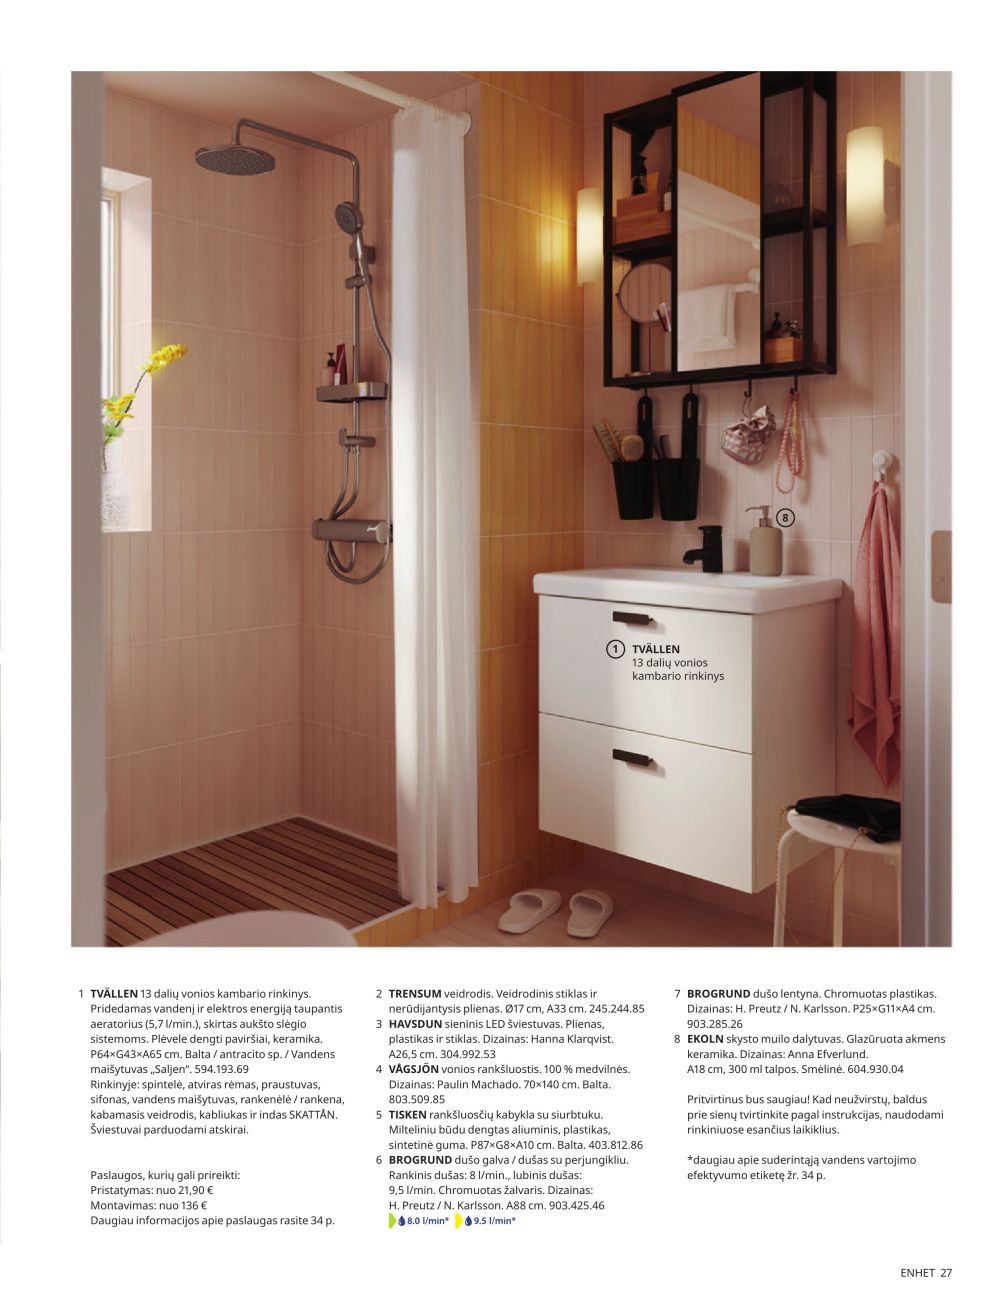 ikea - IKEA - Tik tai, ko reikia - page: 27